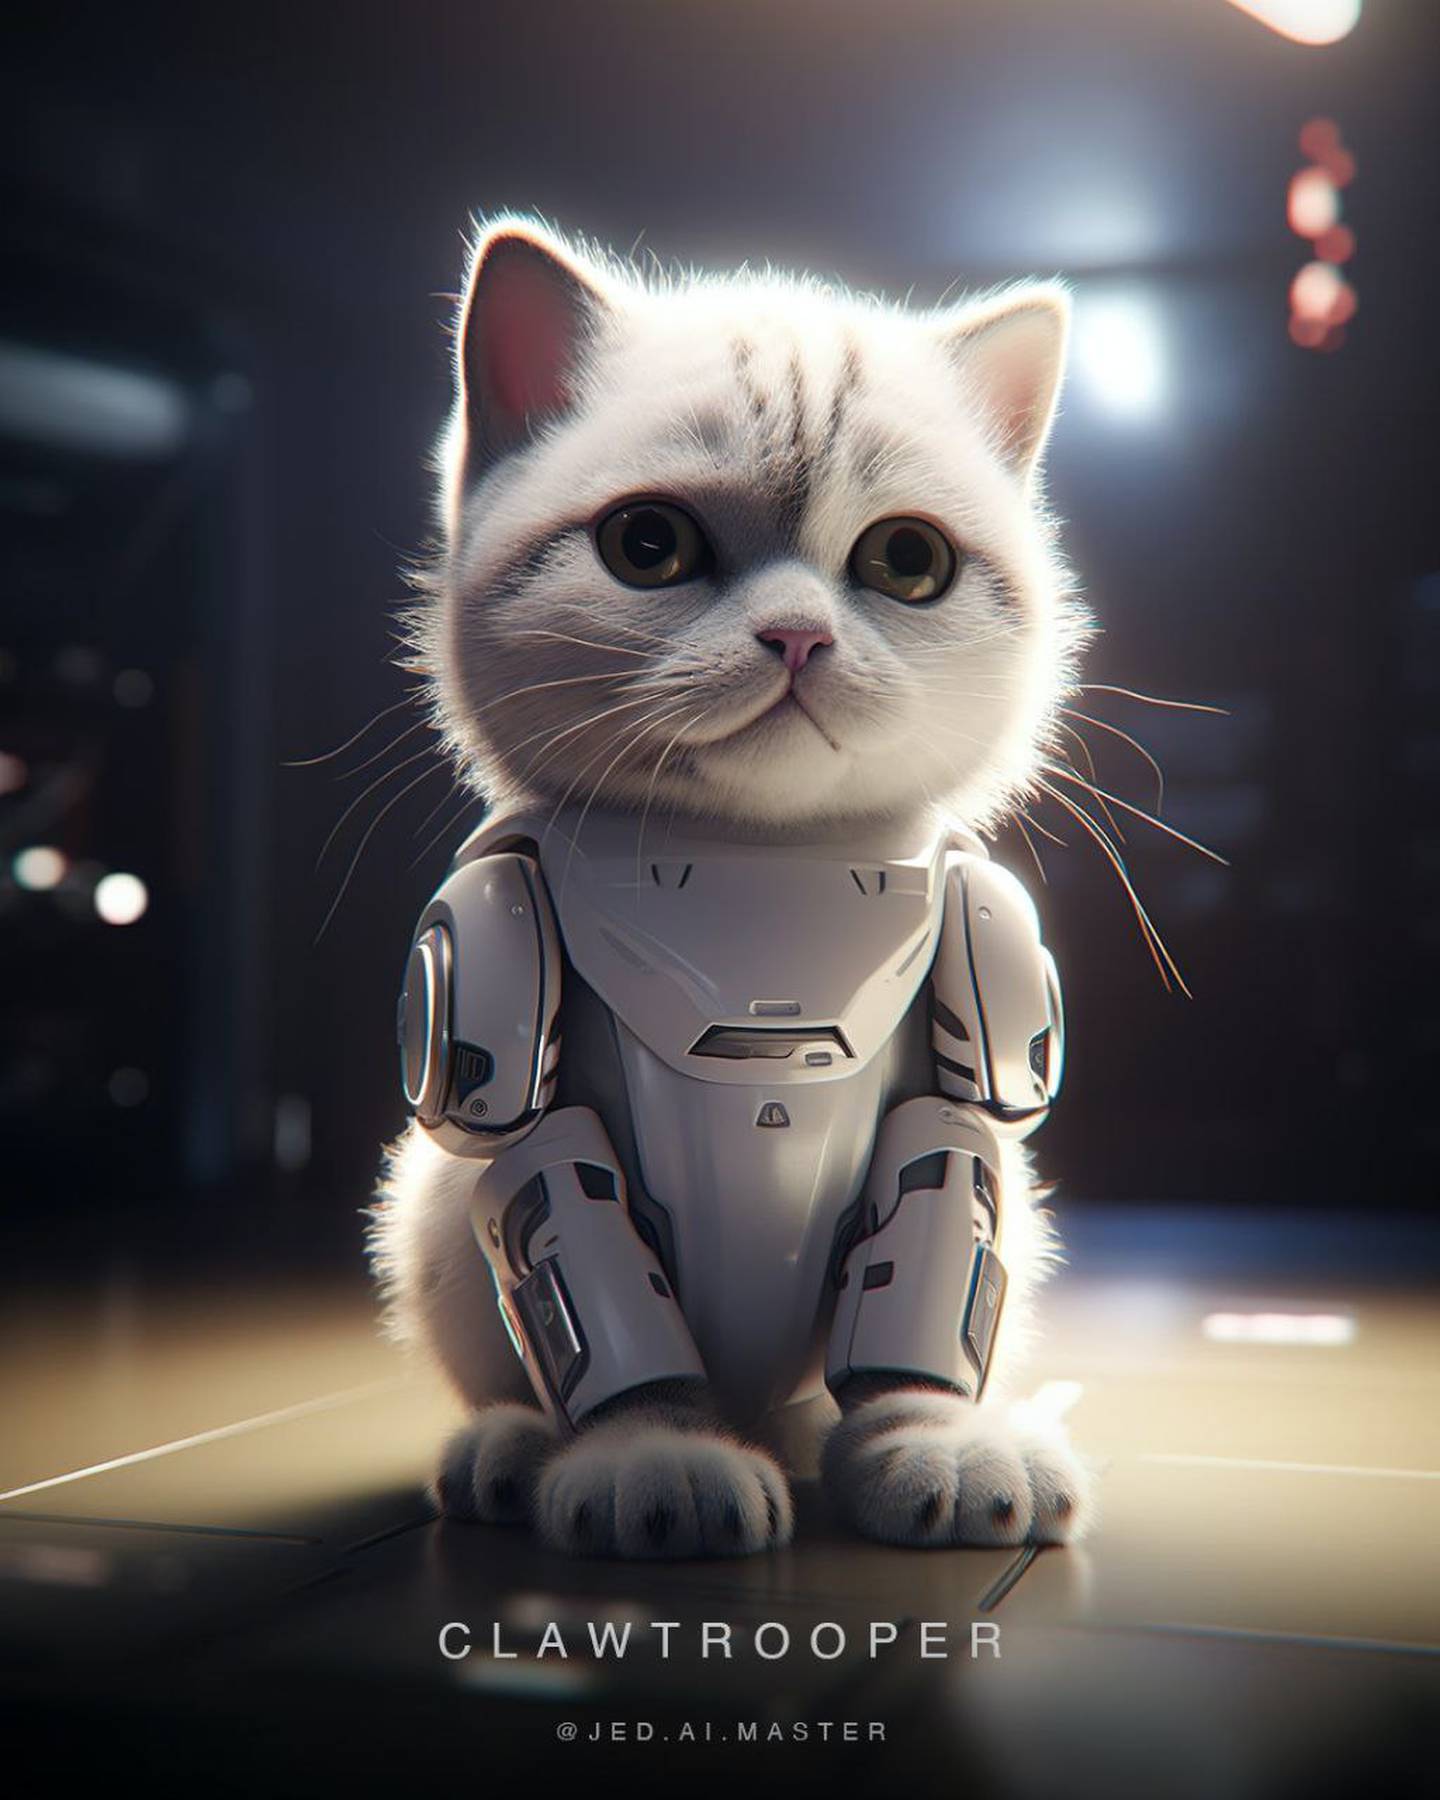 Inteligencia artificial convierte en gatitos a personajes de Star Wars